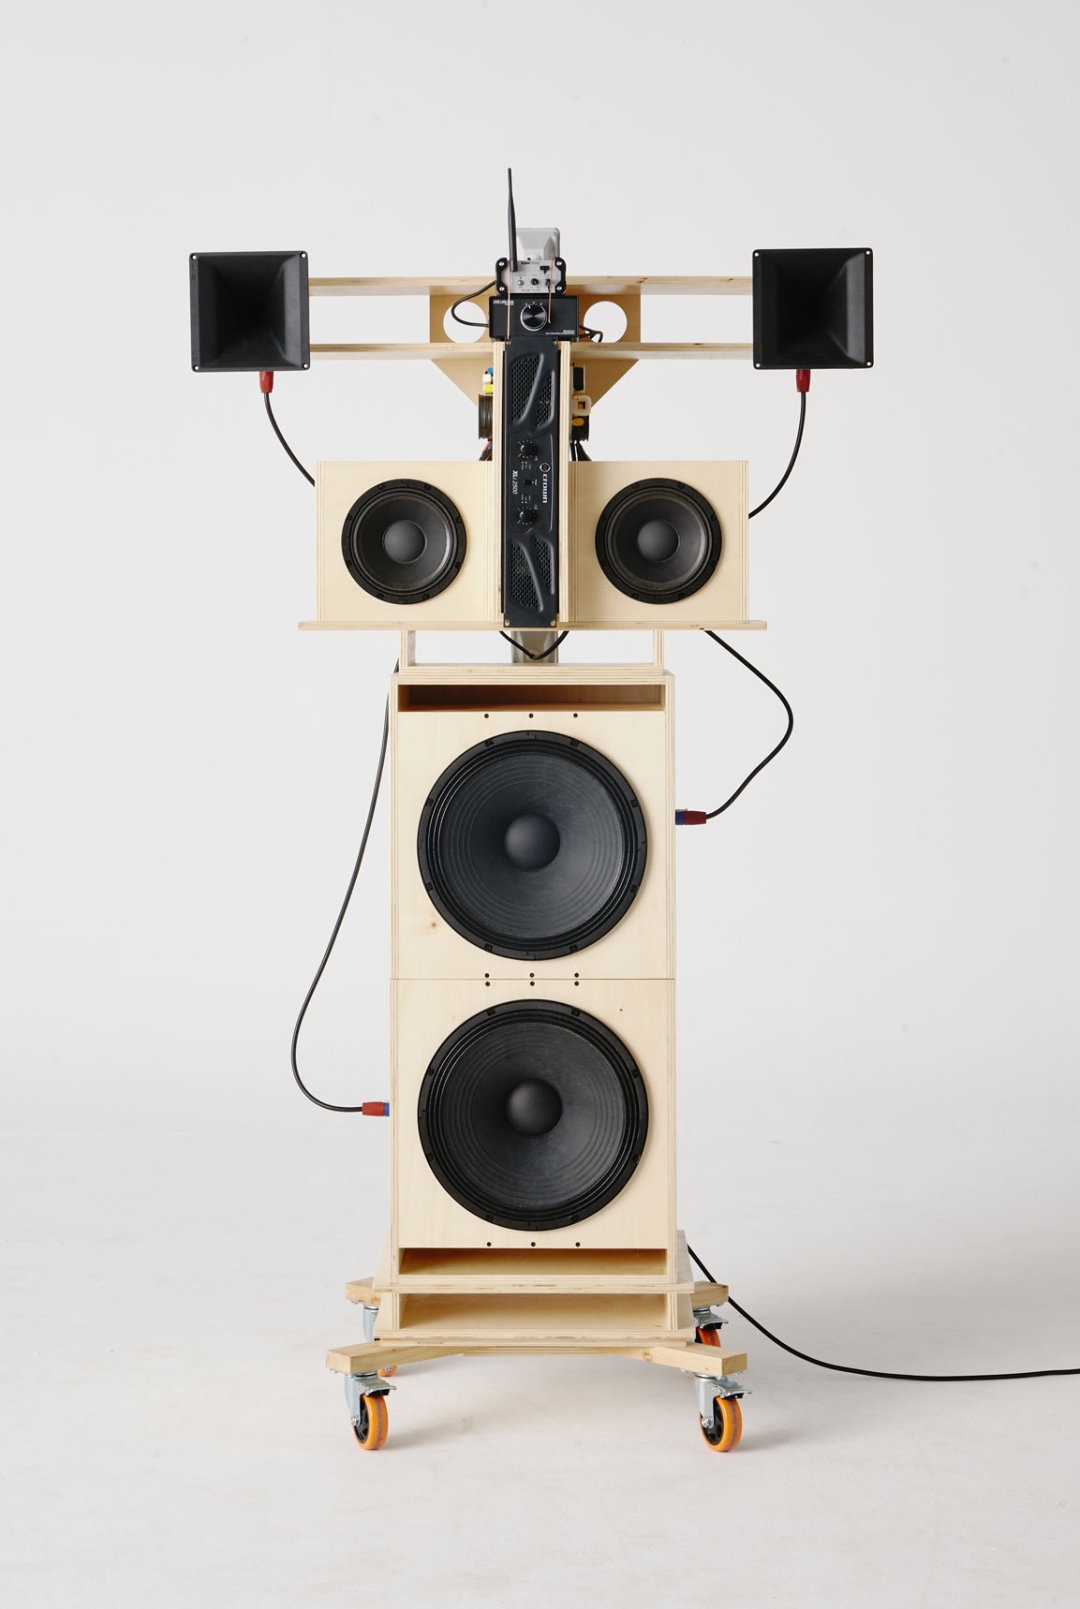 ‘Sound System 03’, by Lucas Muñoz Muñoz